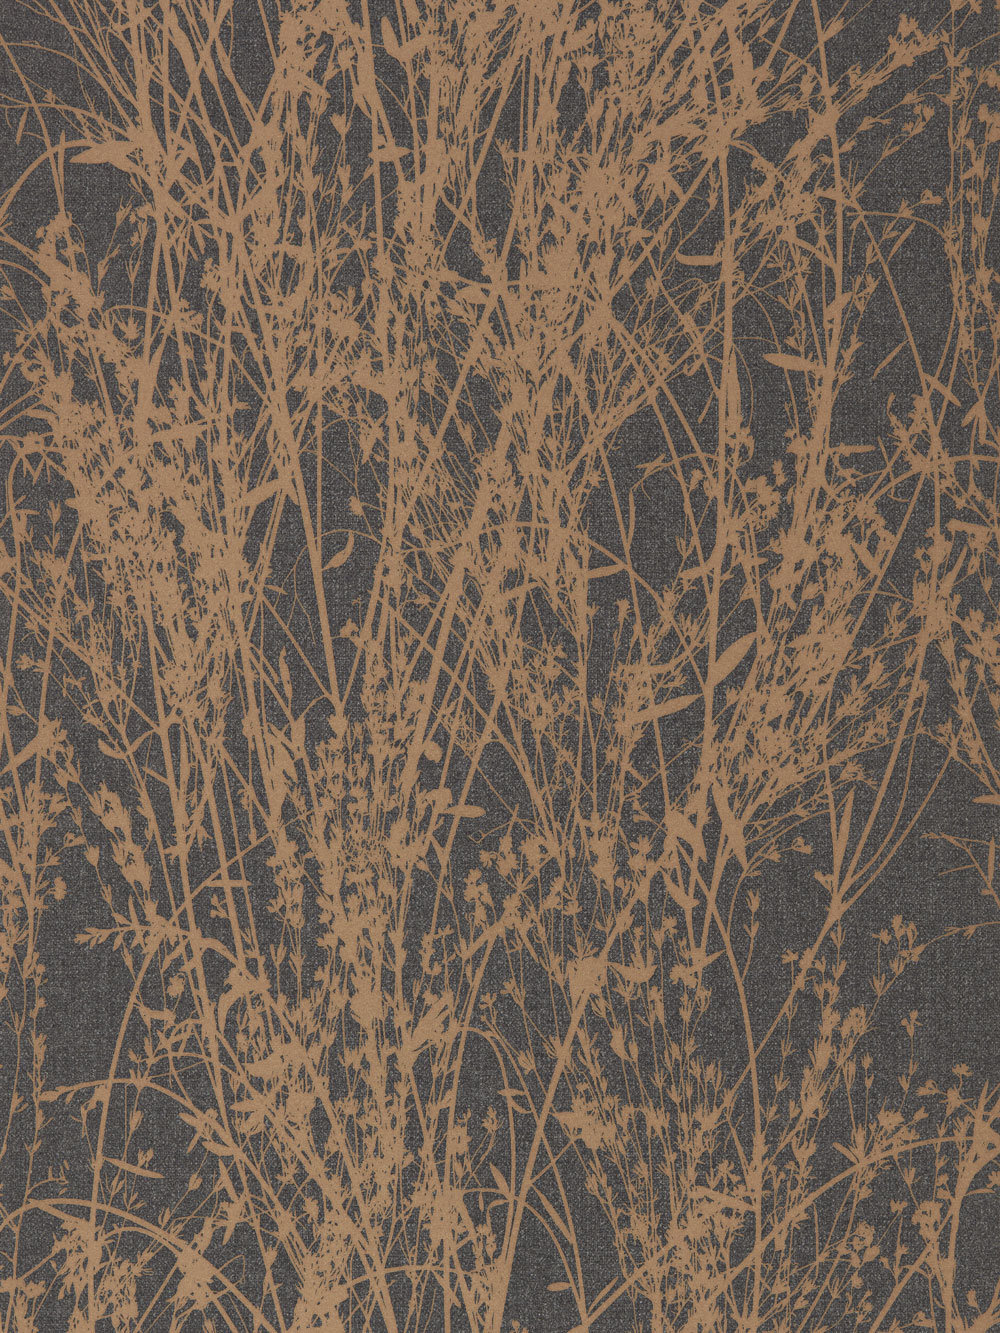 papier peint anthracite,brindille,marron,arbre,plante,herbe